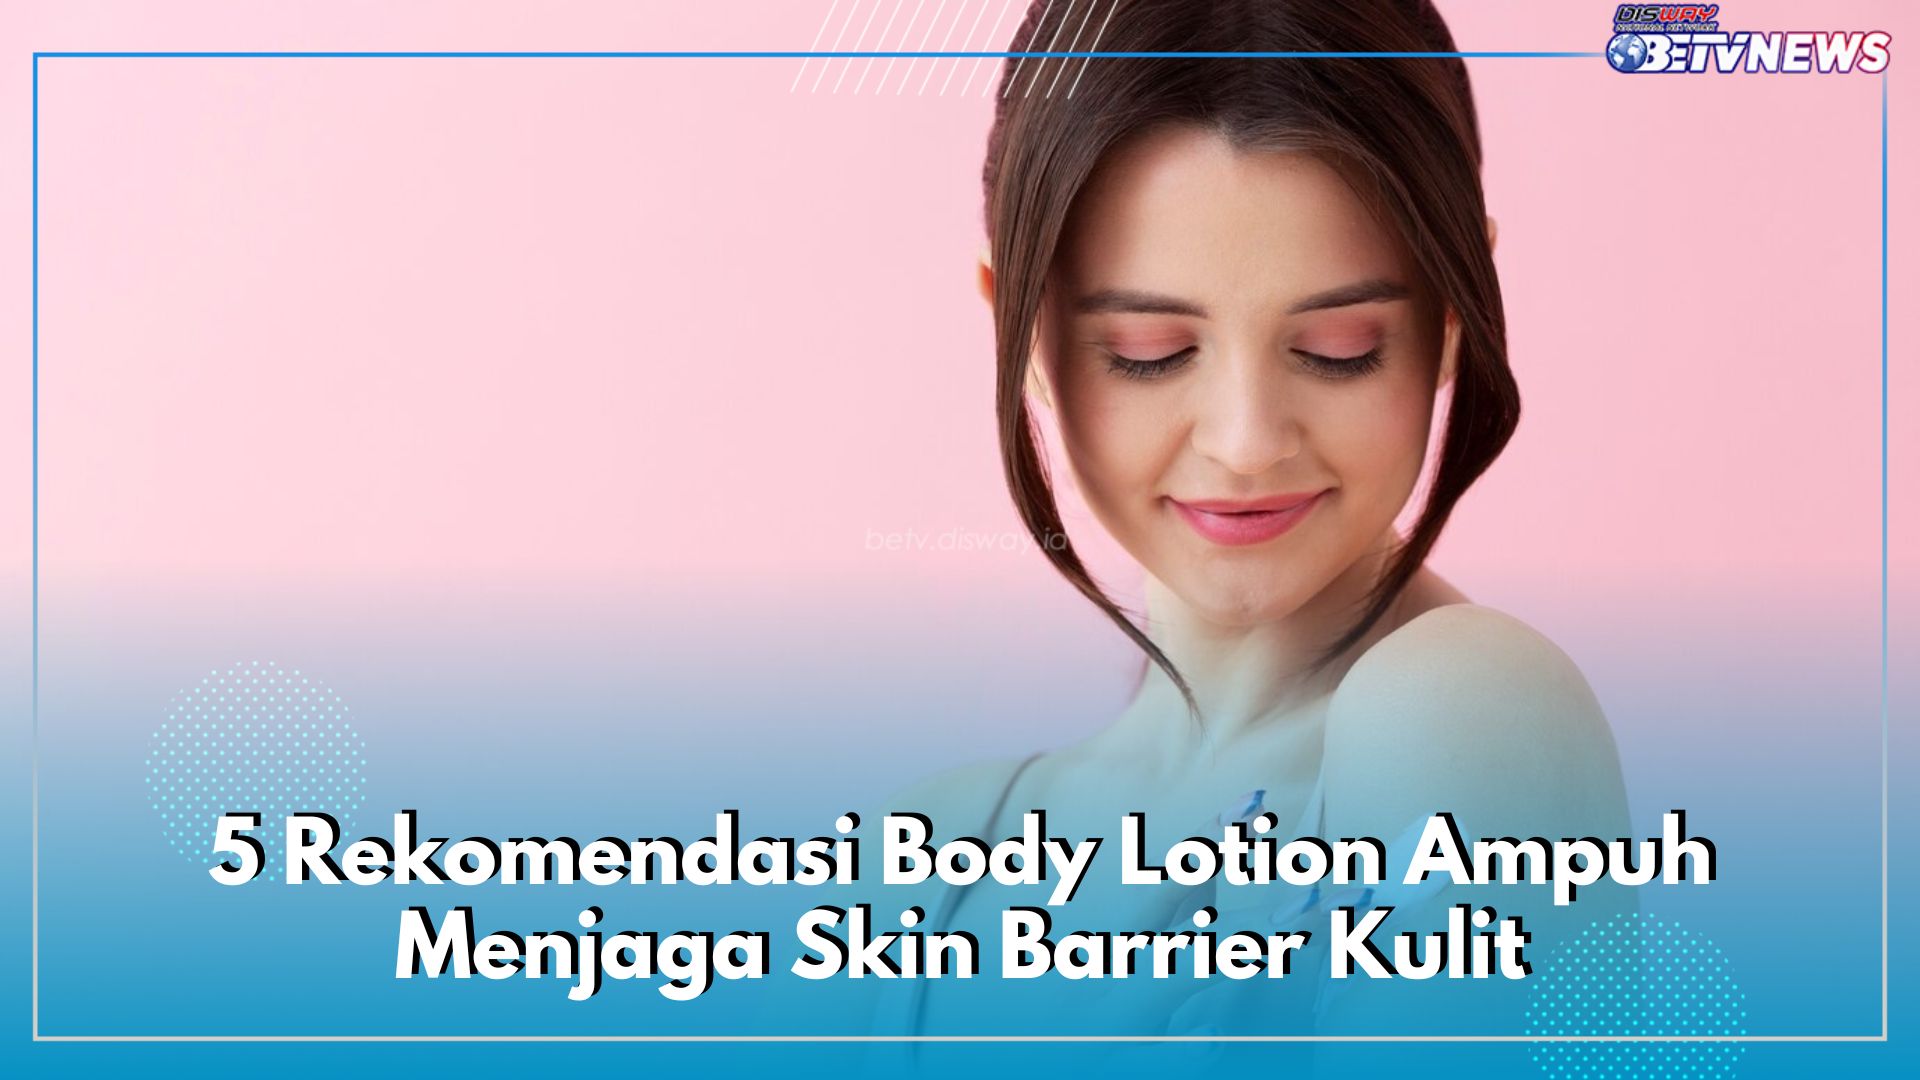 SPF Tinggi, Inilah 5 Rekomendasi Body Lotion Ampuh Menjaga Skin Barrier Kulit Tubuh dari Sinar Matahari